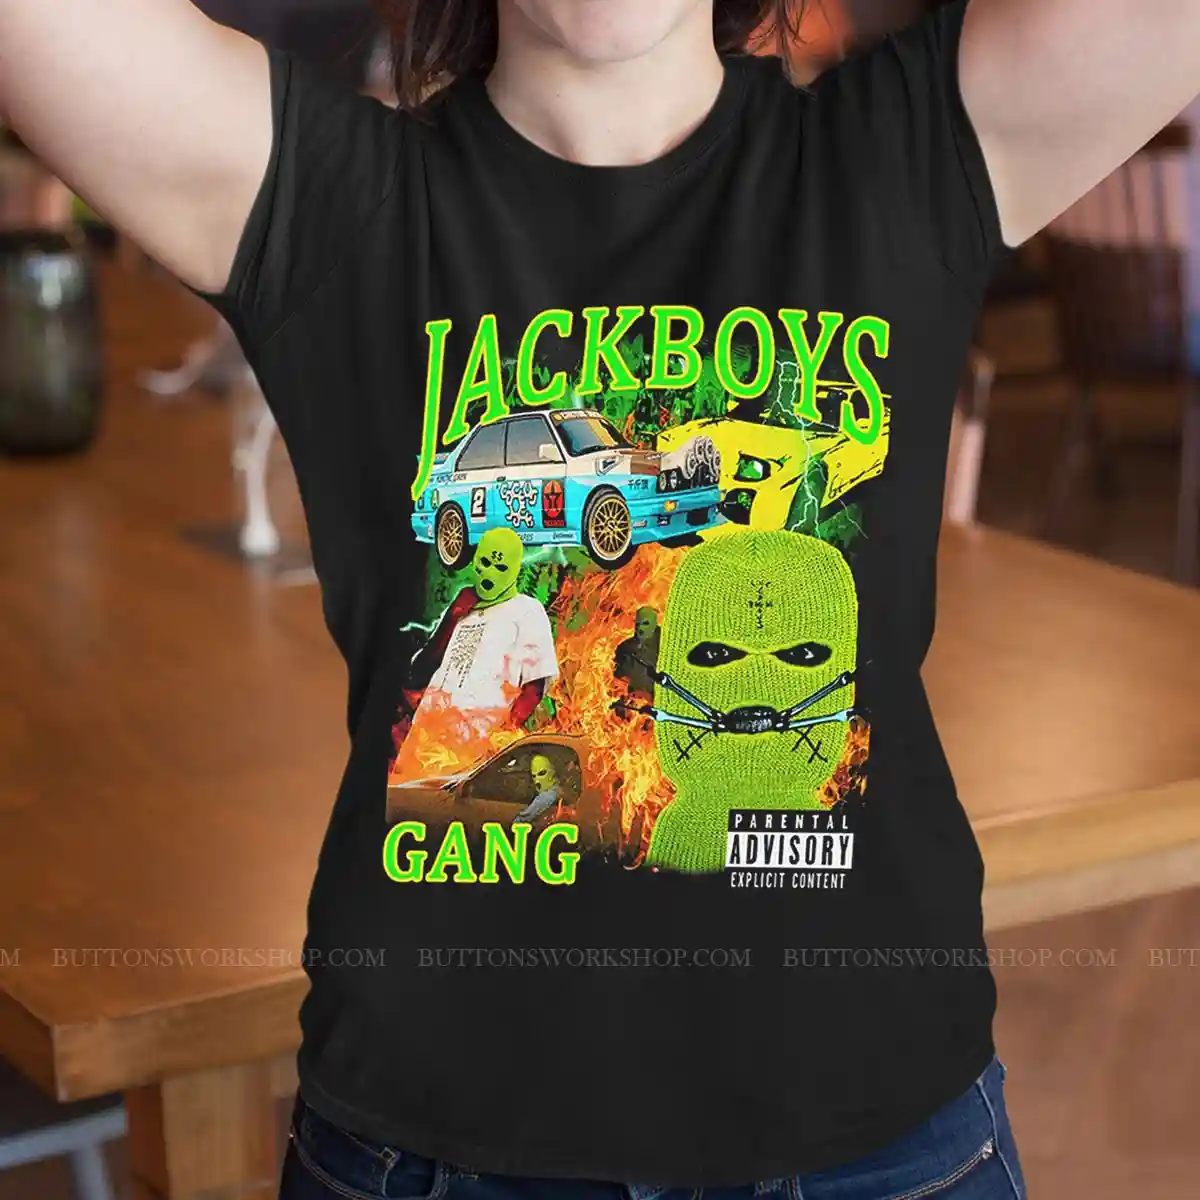 Jackboys Shirt Unisex Tshirt